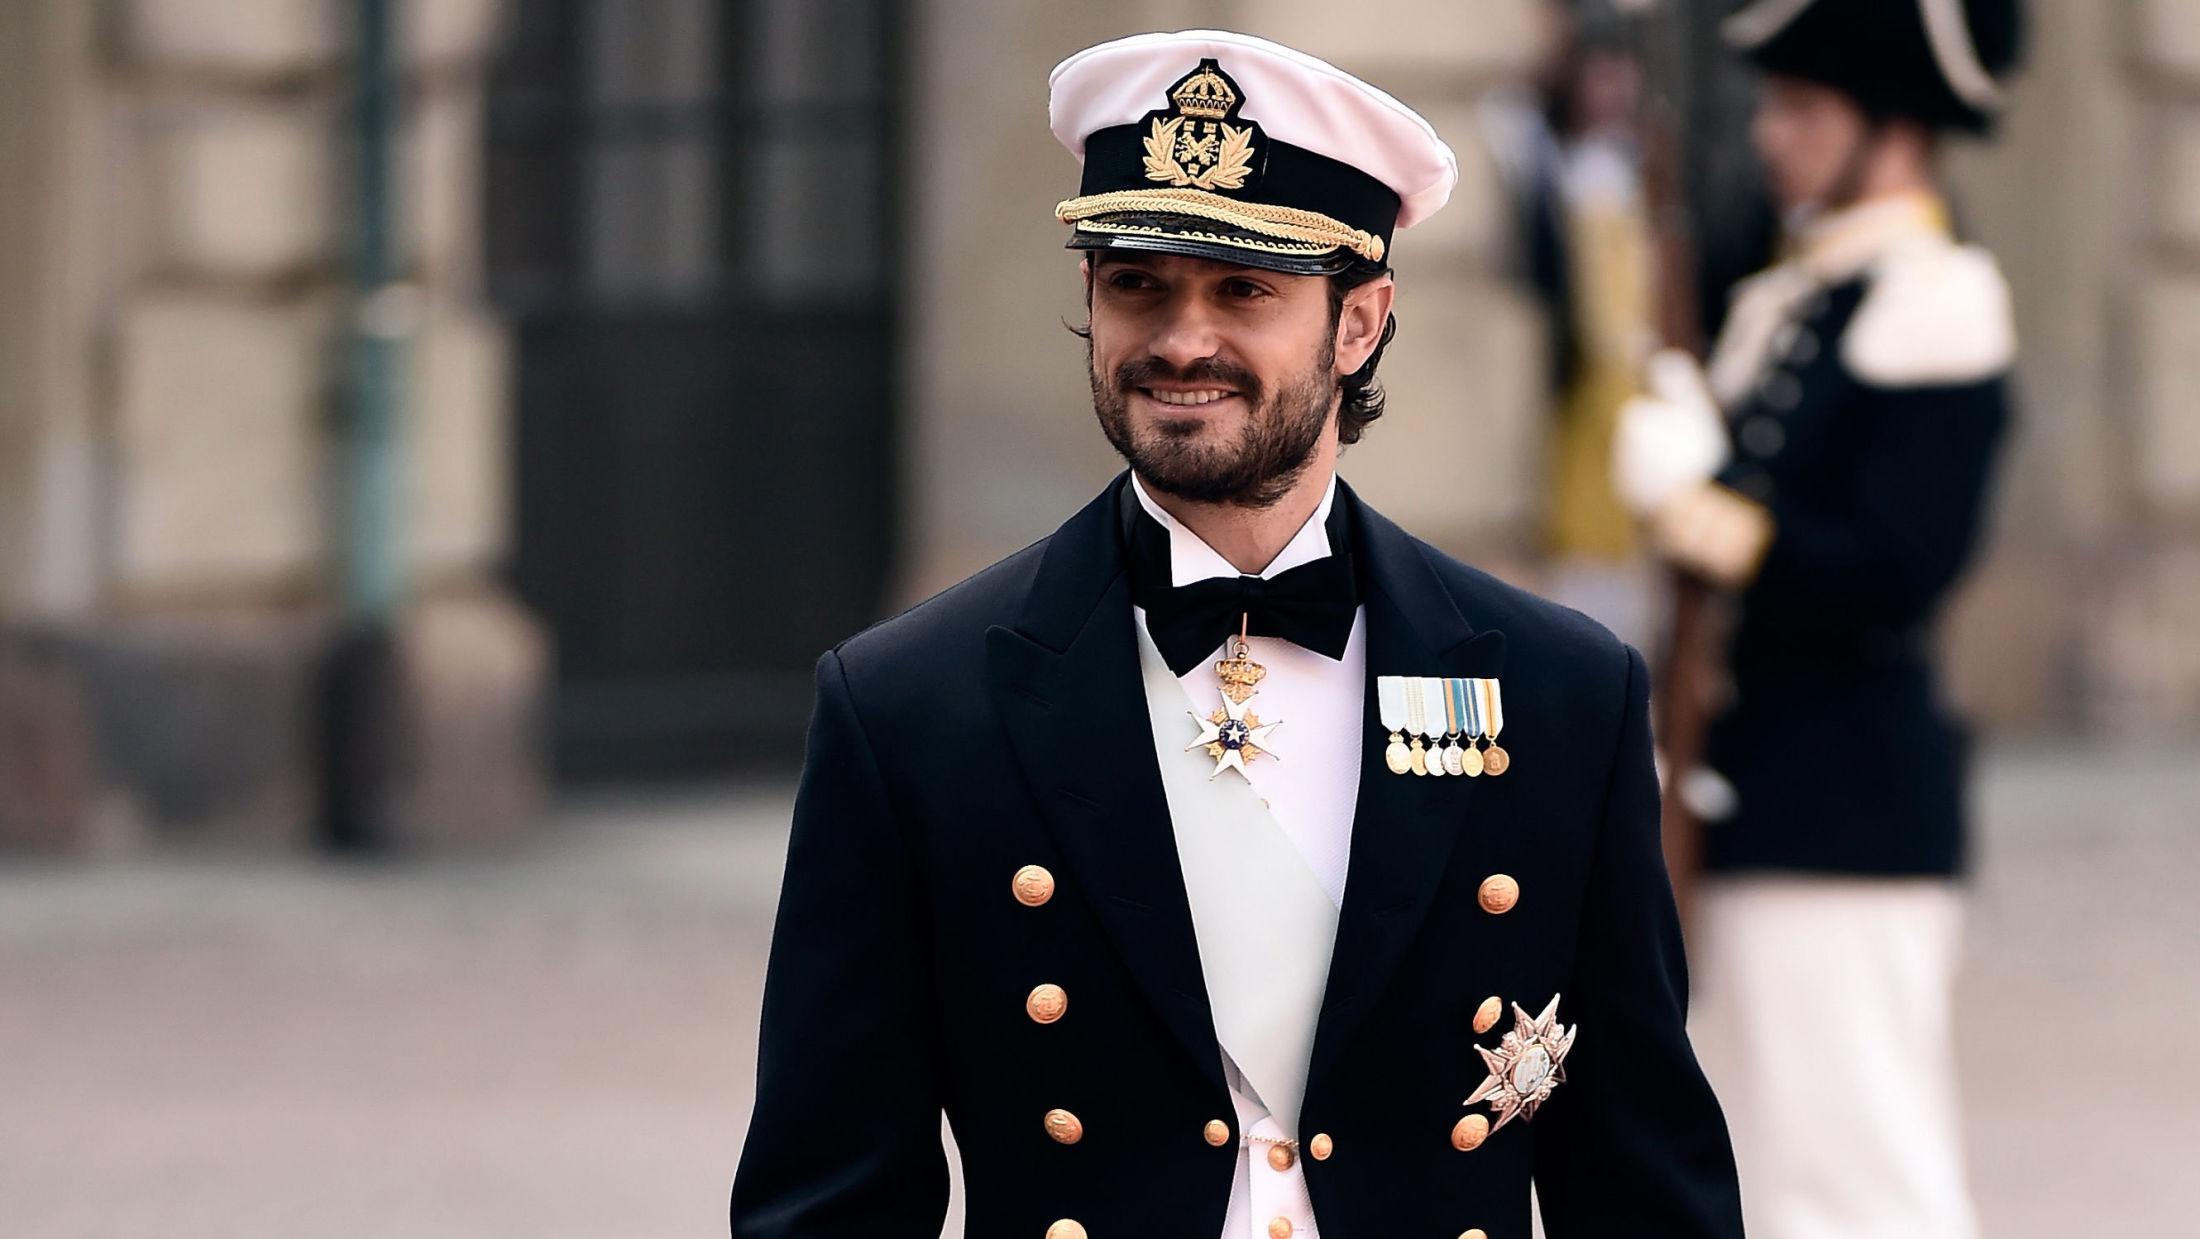 GIFTEKLAR: Prins Carl Philip strålte på den røde løperen inn til sitt eget bryllup. Foto: Getty Images